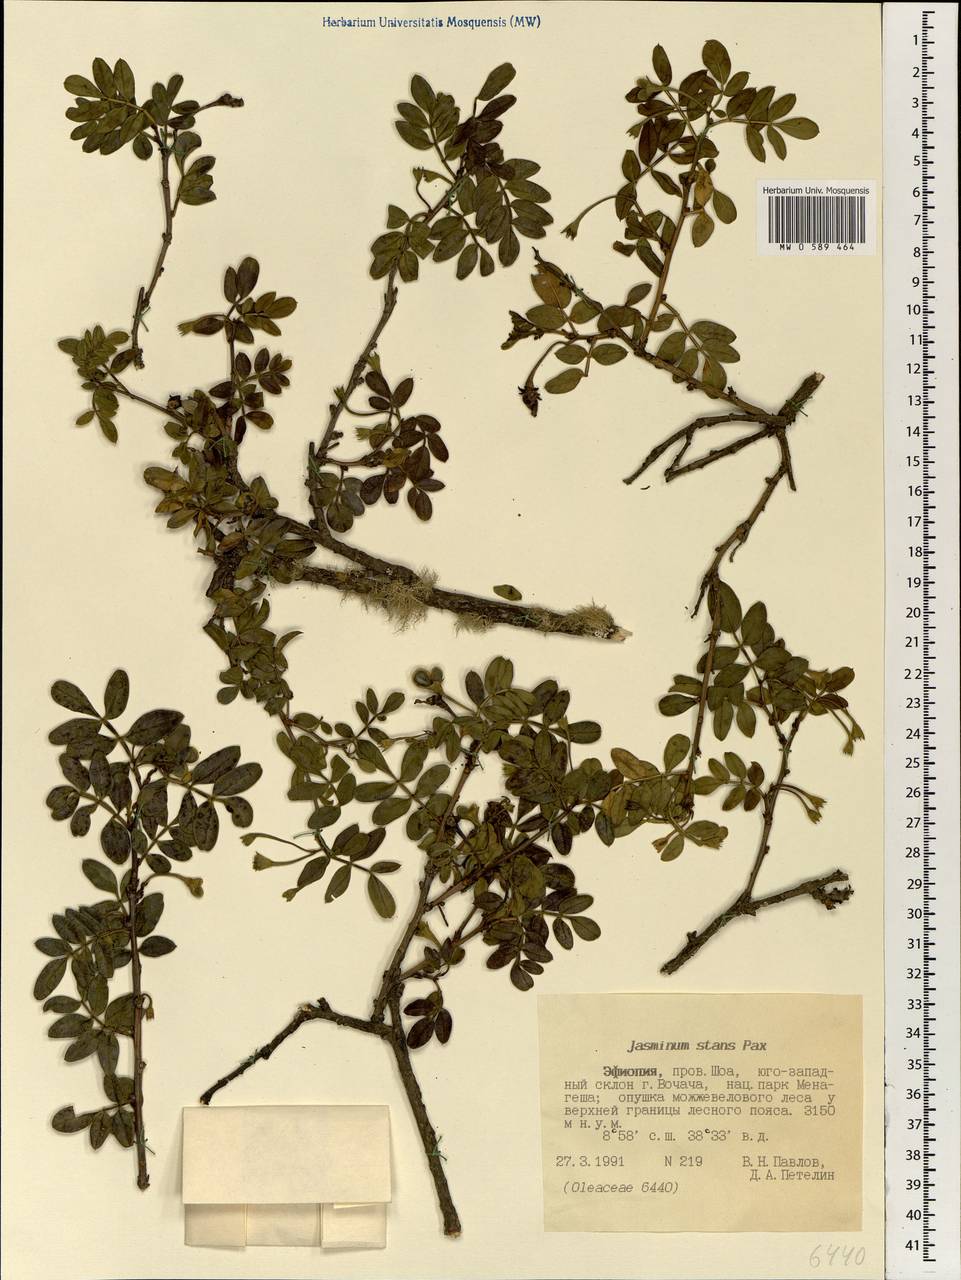 Chrysojasminum stans (Pax) Banfi, Африка (AFR) (Эфиопия)